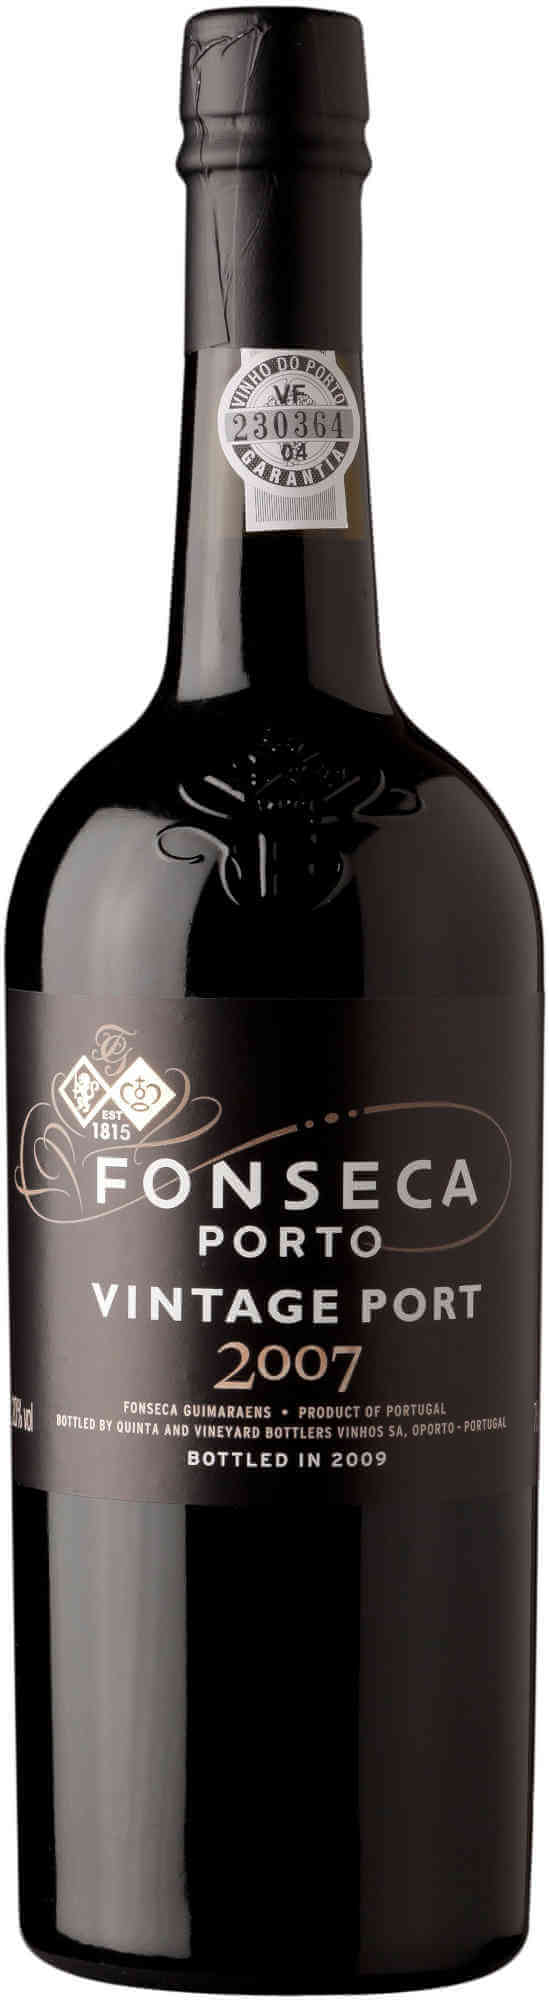 Fonseca-Vintage-Port-2007